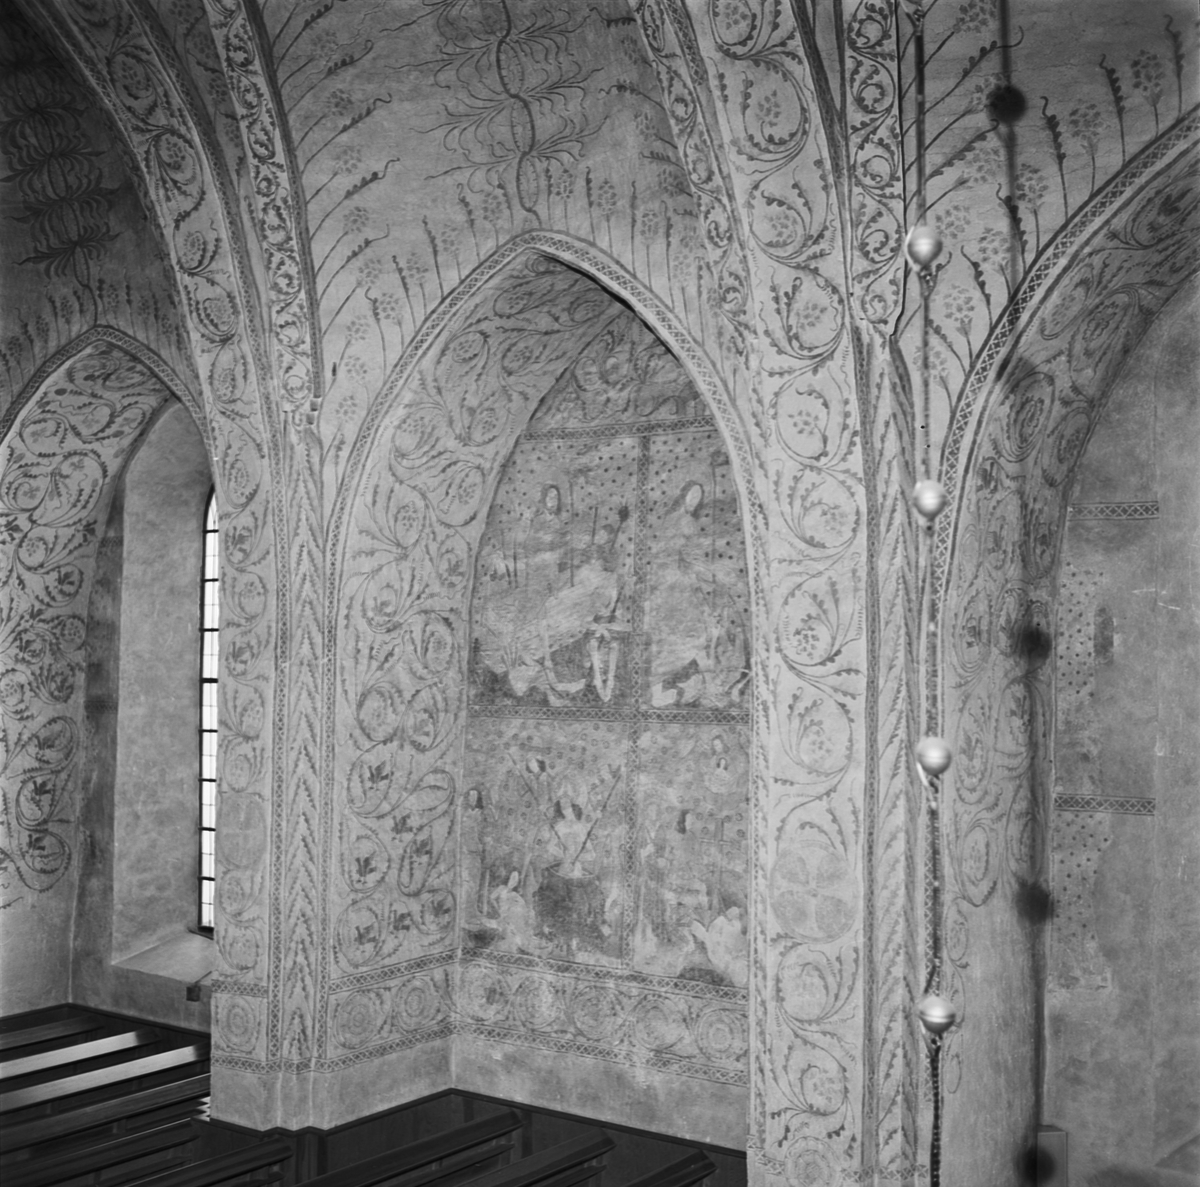 Väggmålningar i Tierps kyrka, Uppland 1969